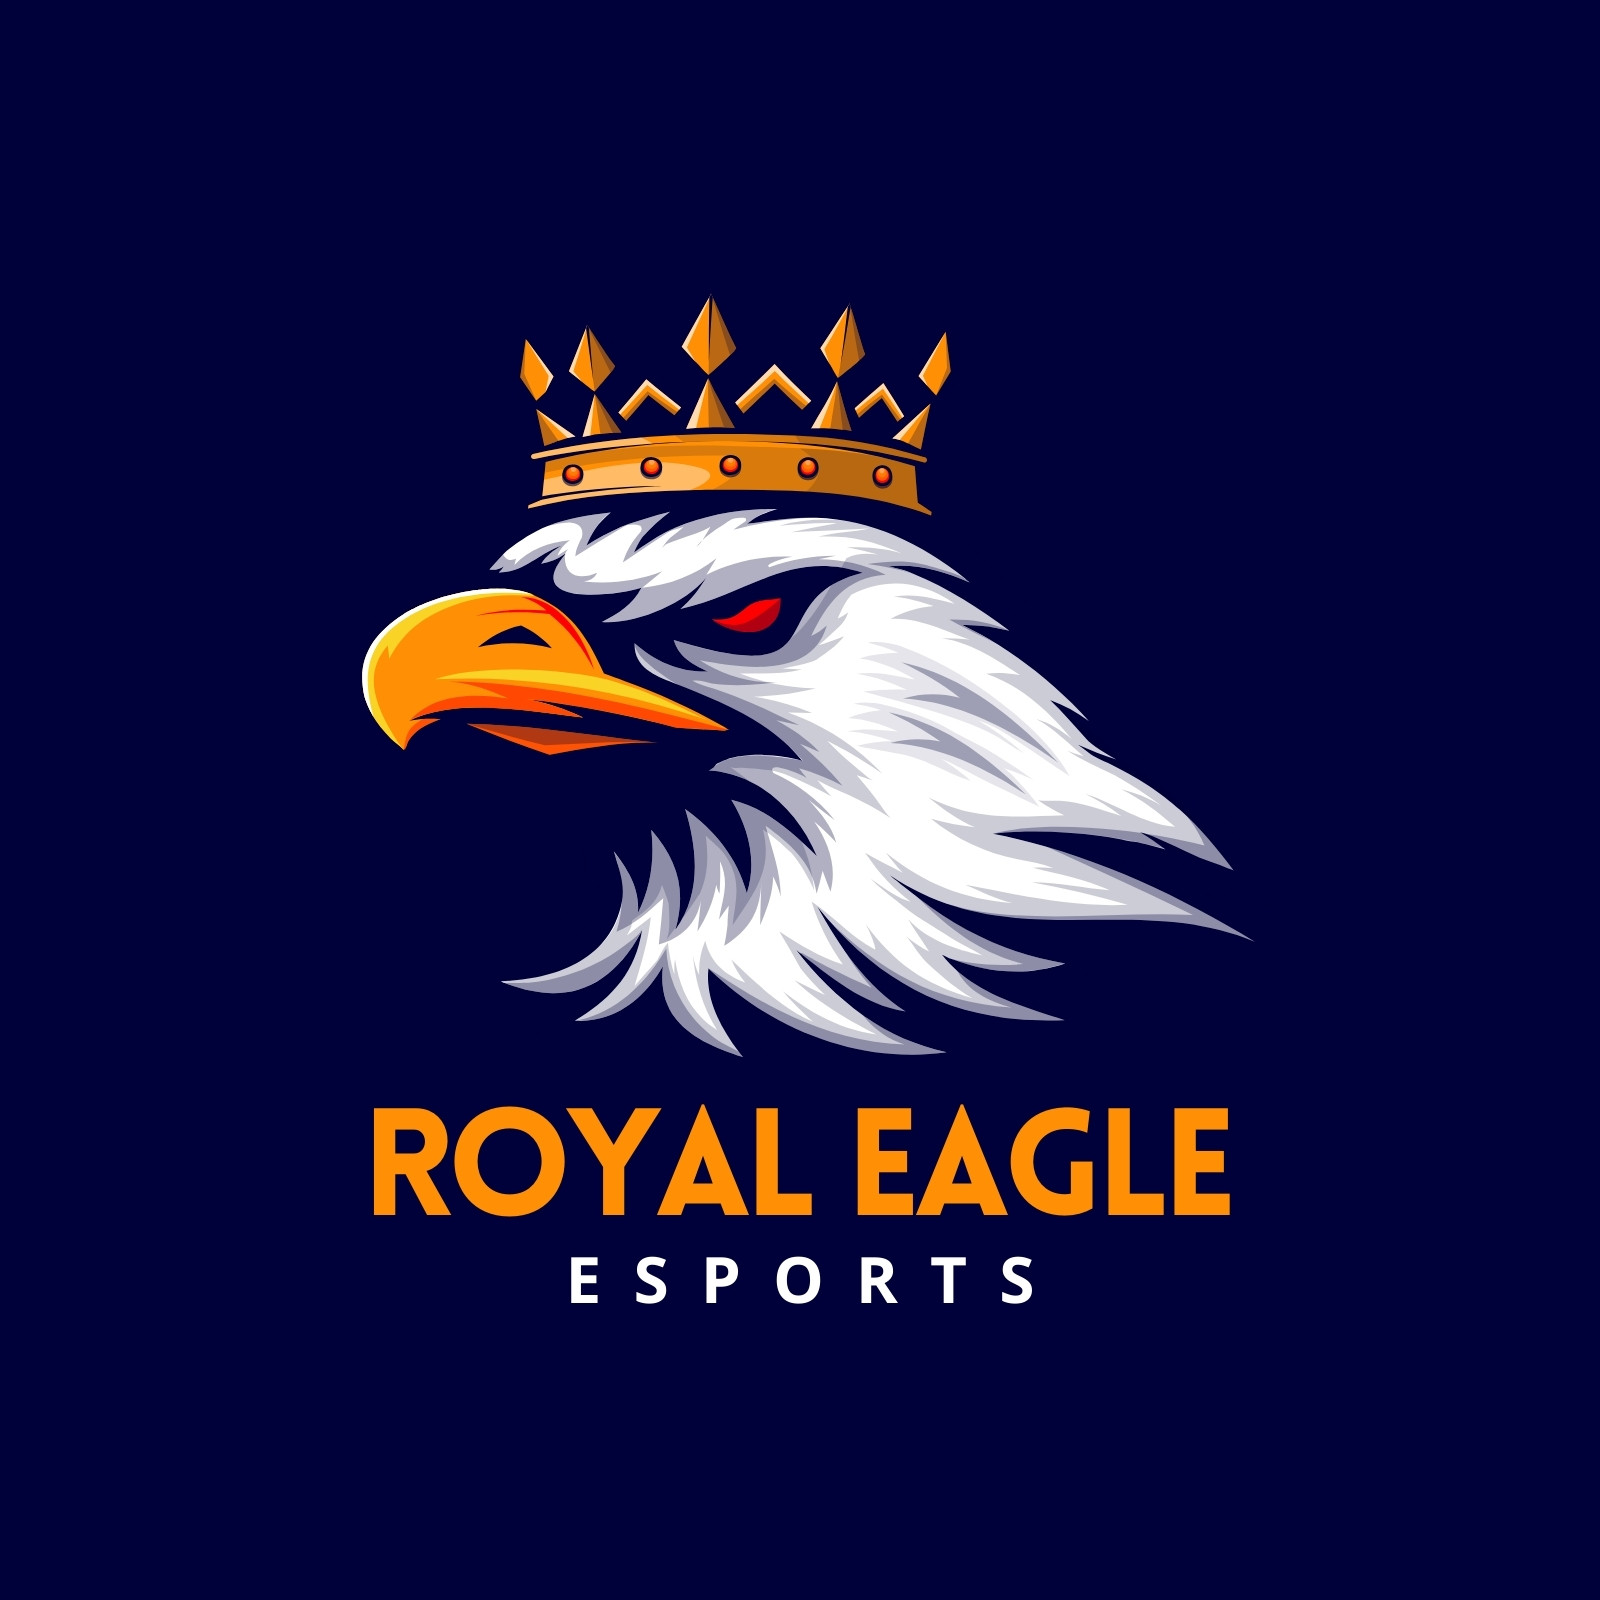 Navy and Orange Esports Illustrative Gaming Eagle Logo